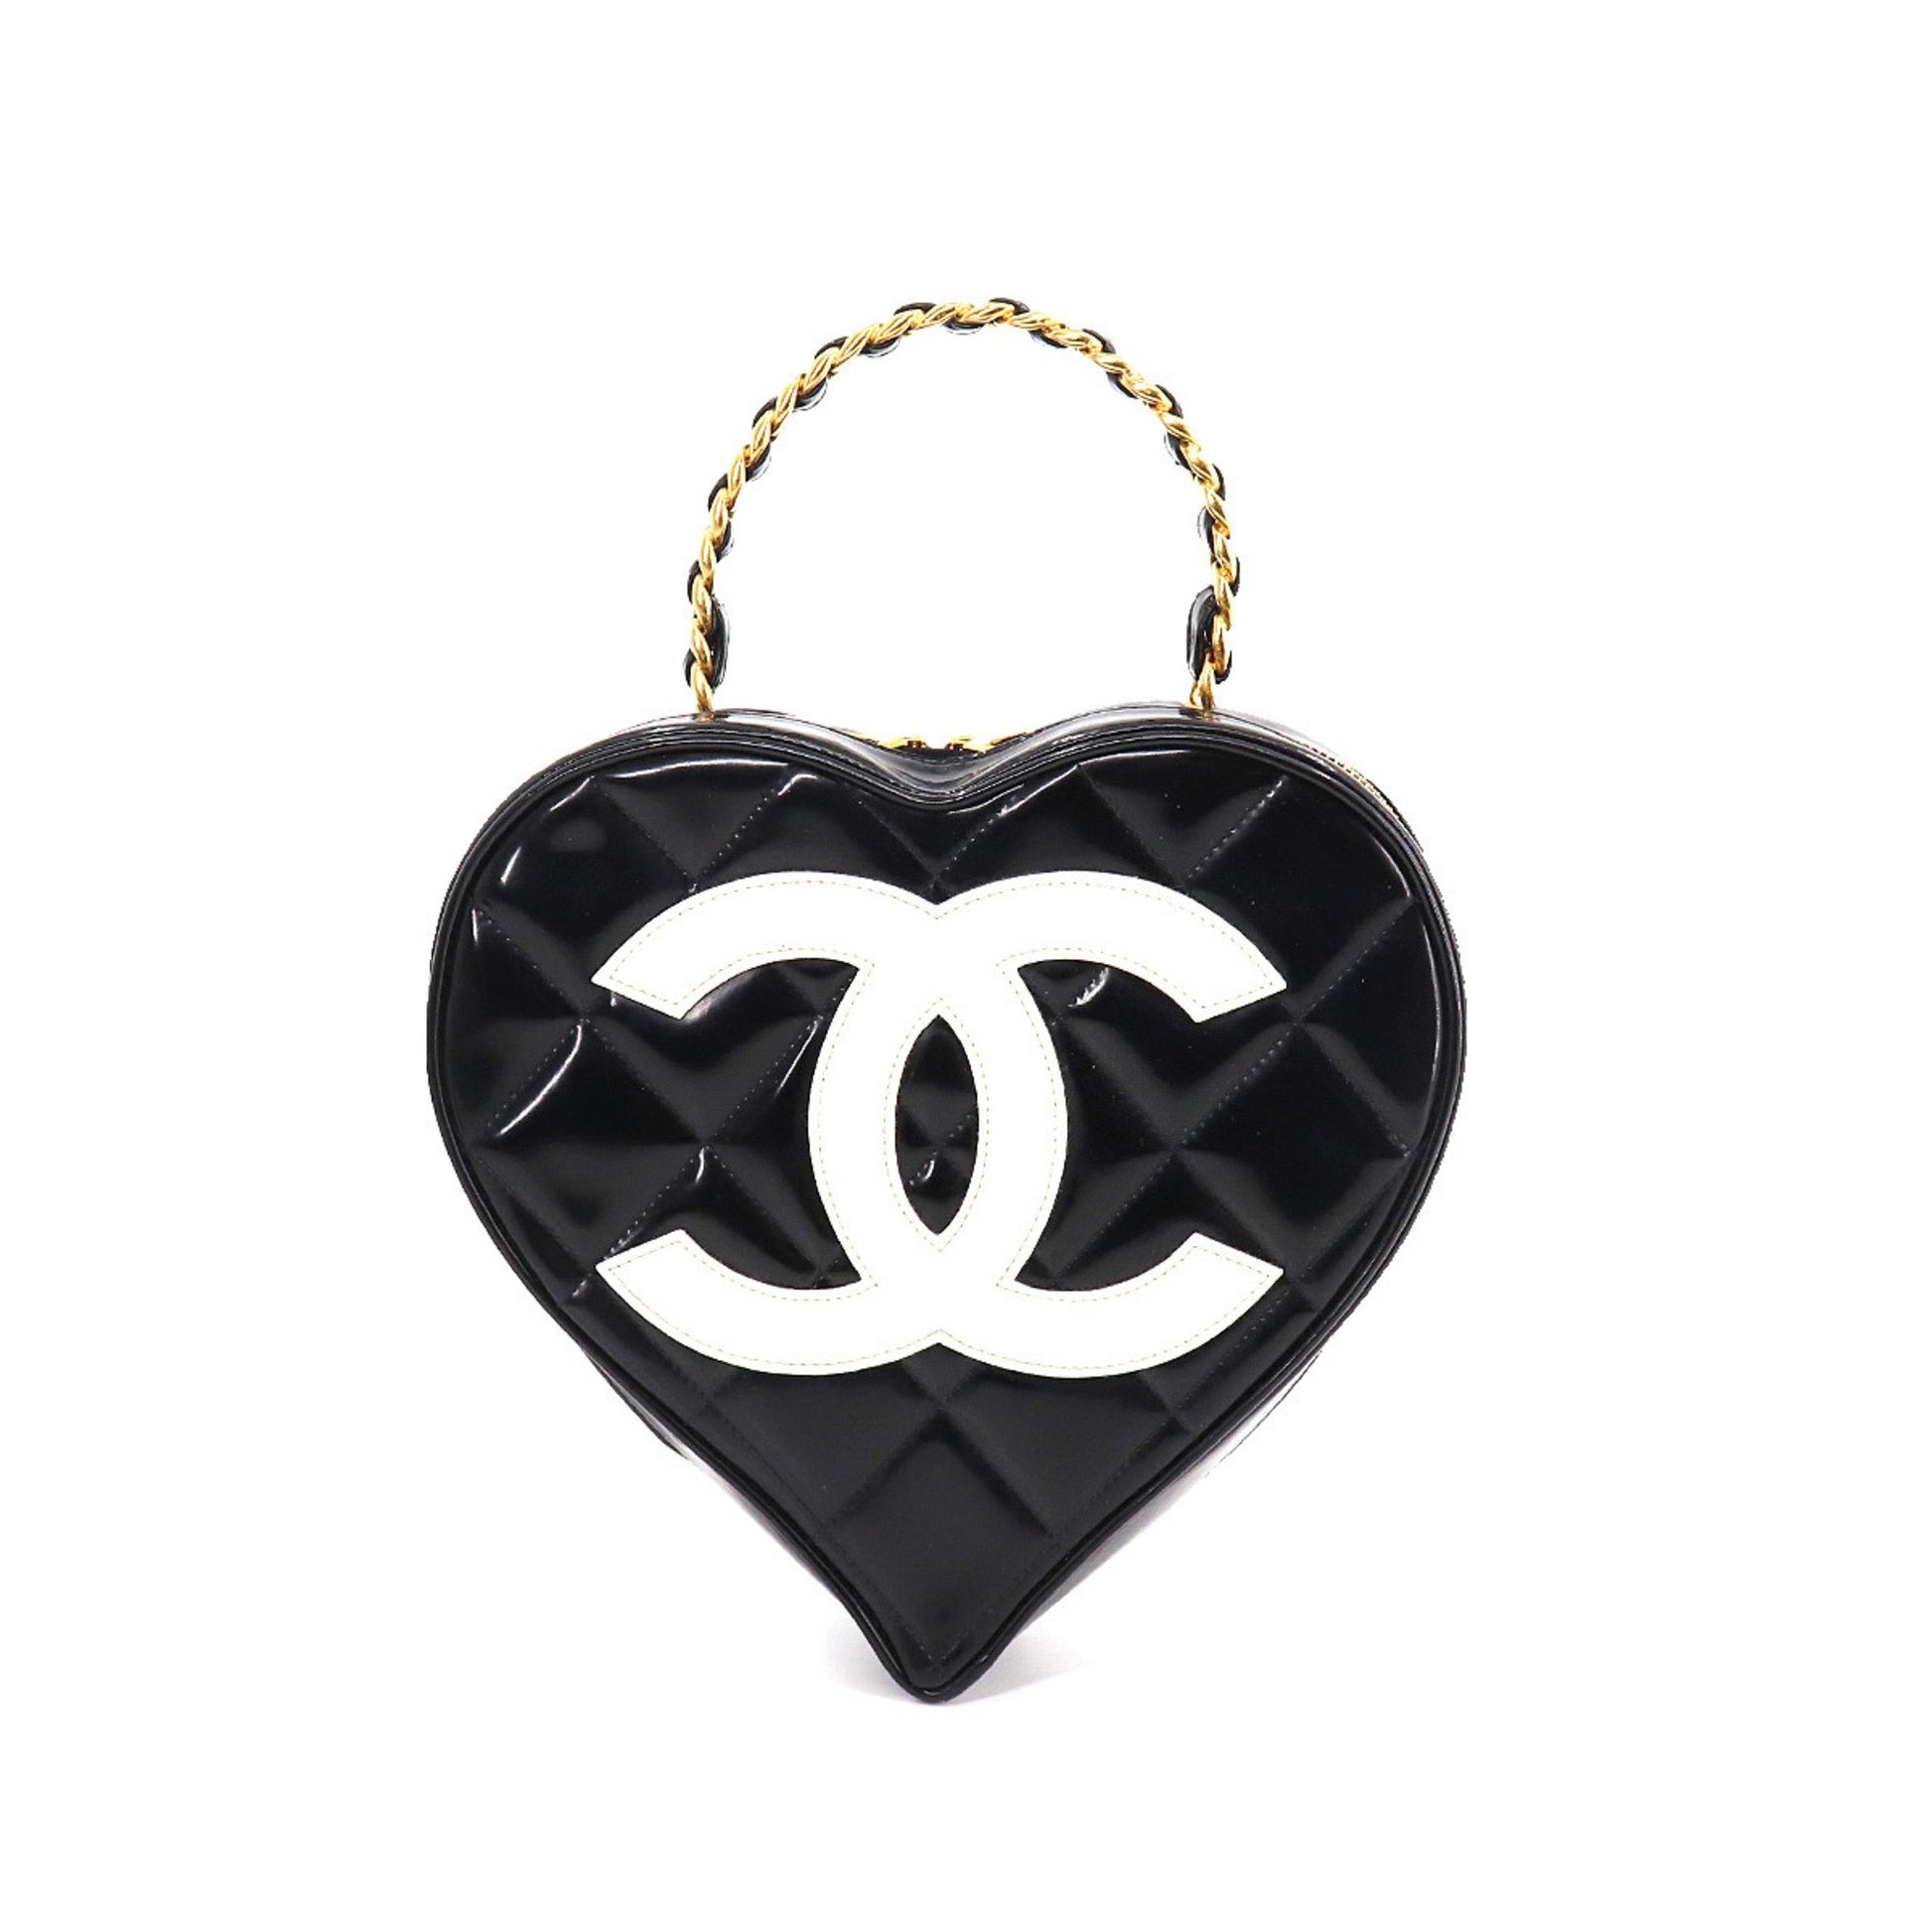 Chanel matelasse heart vanity bag enamel leather black white vintage g